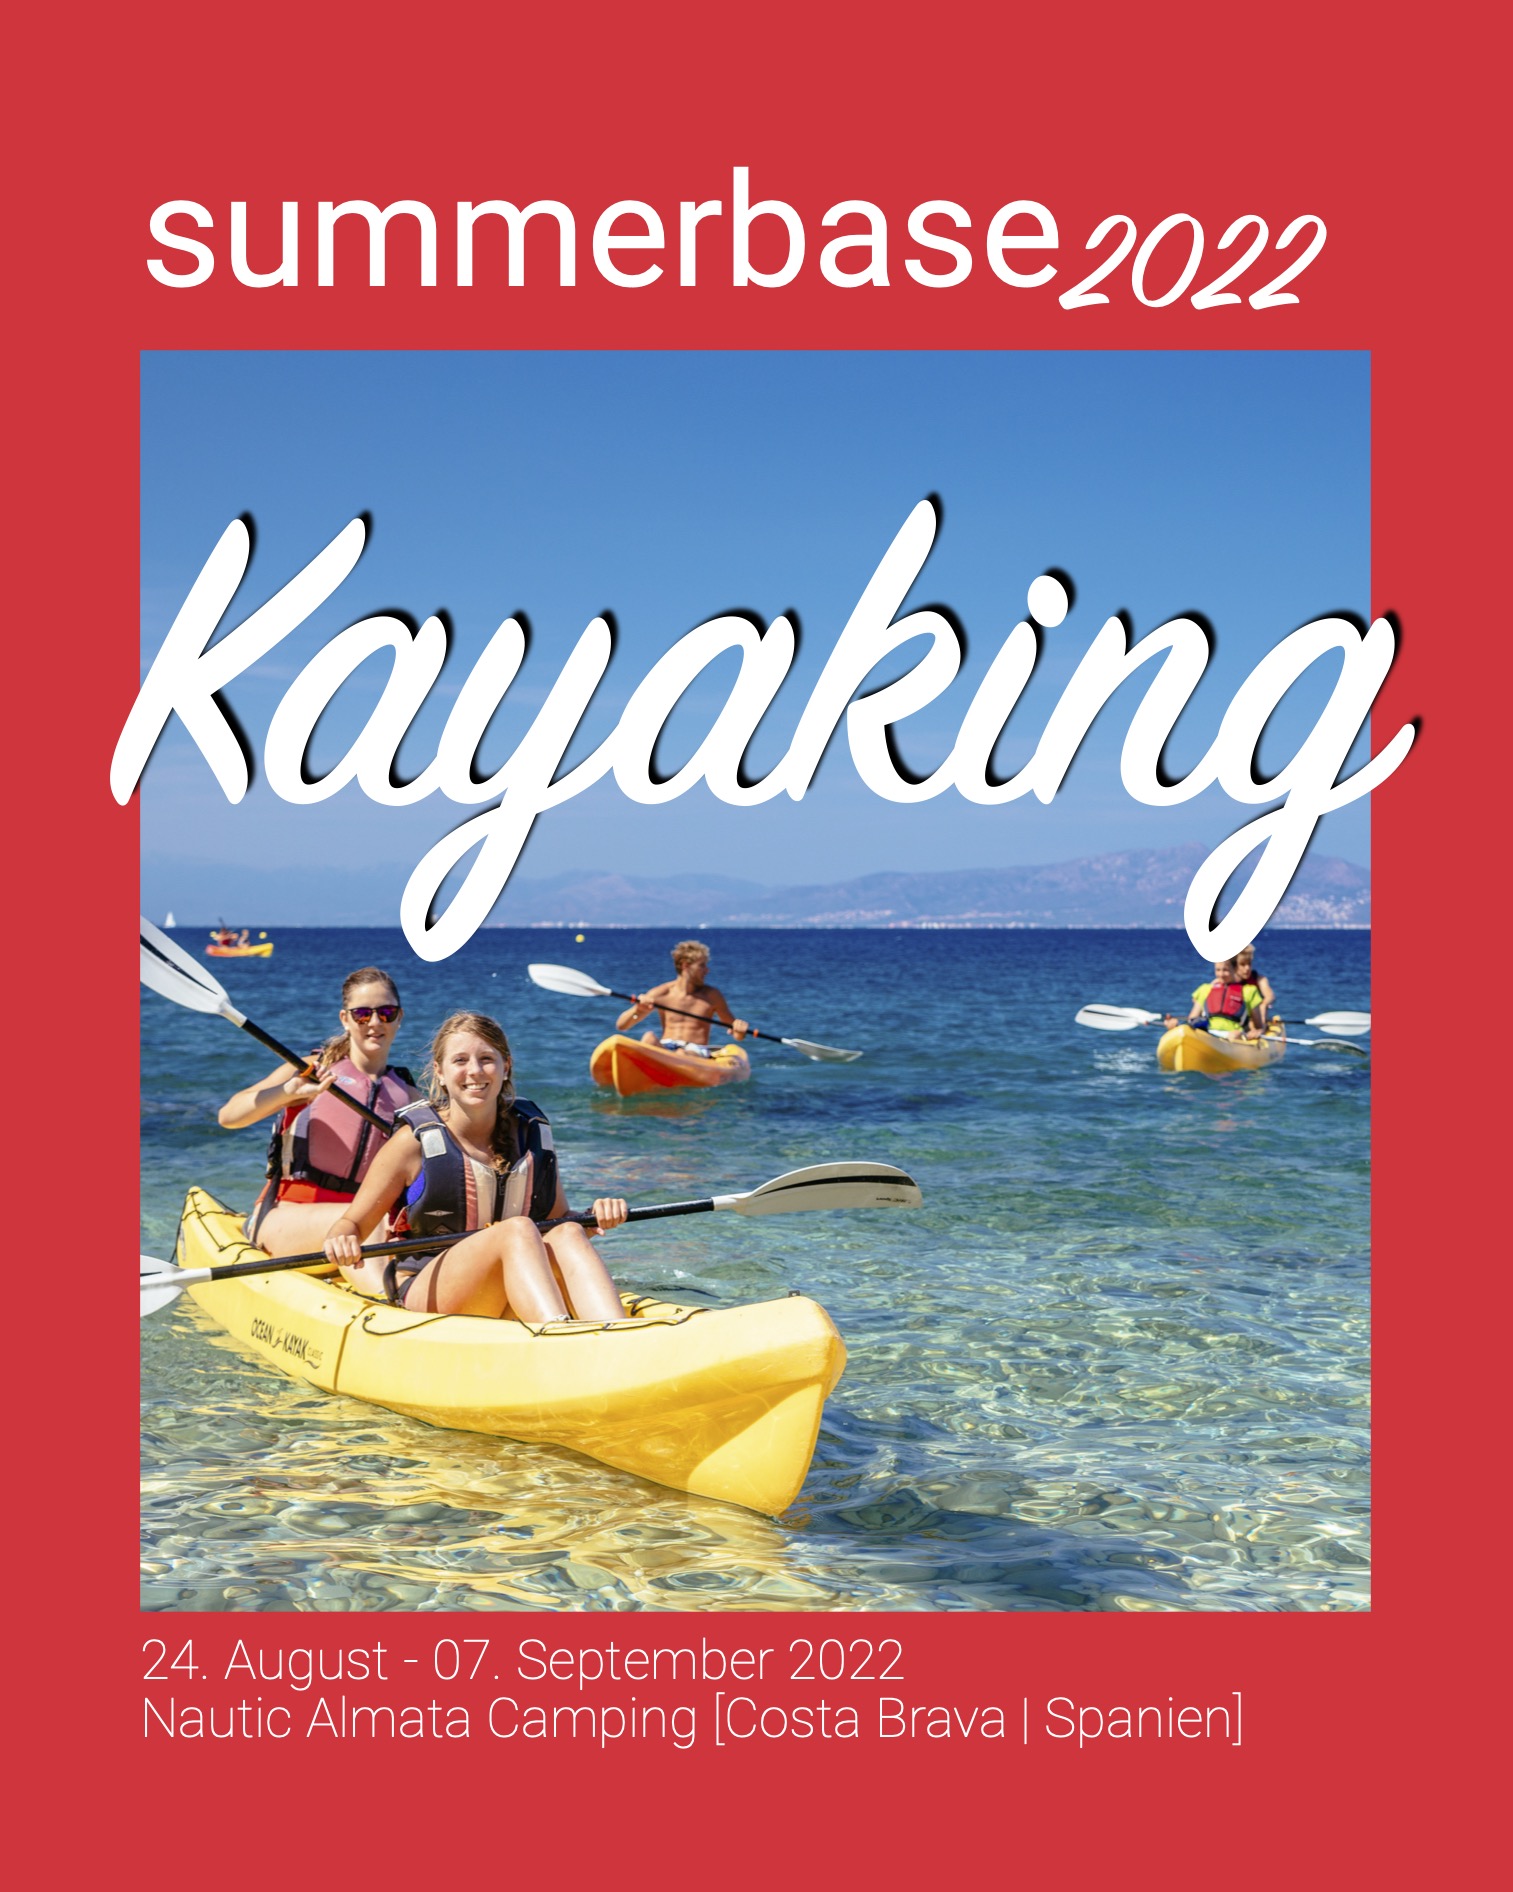 summerbase_Werbung_Kayaking